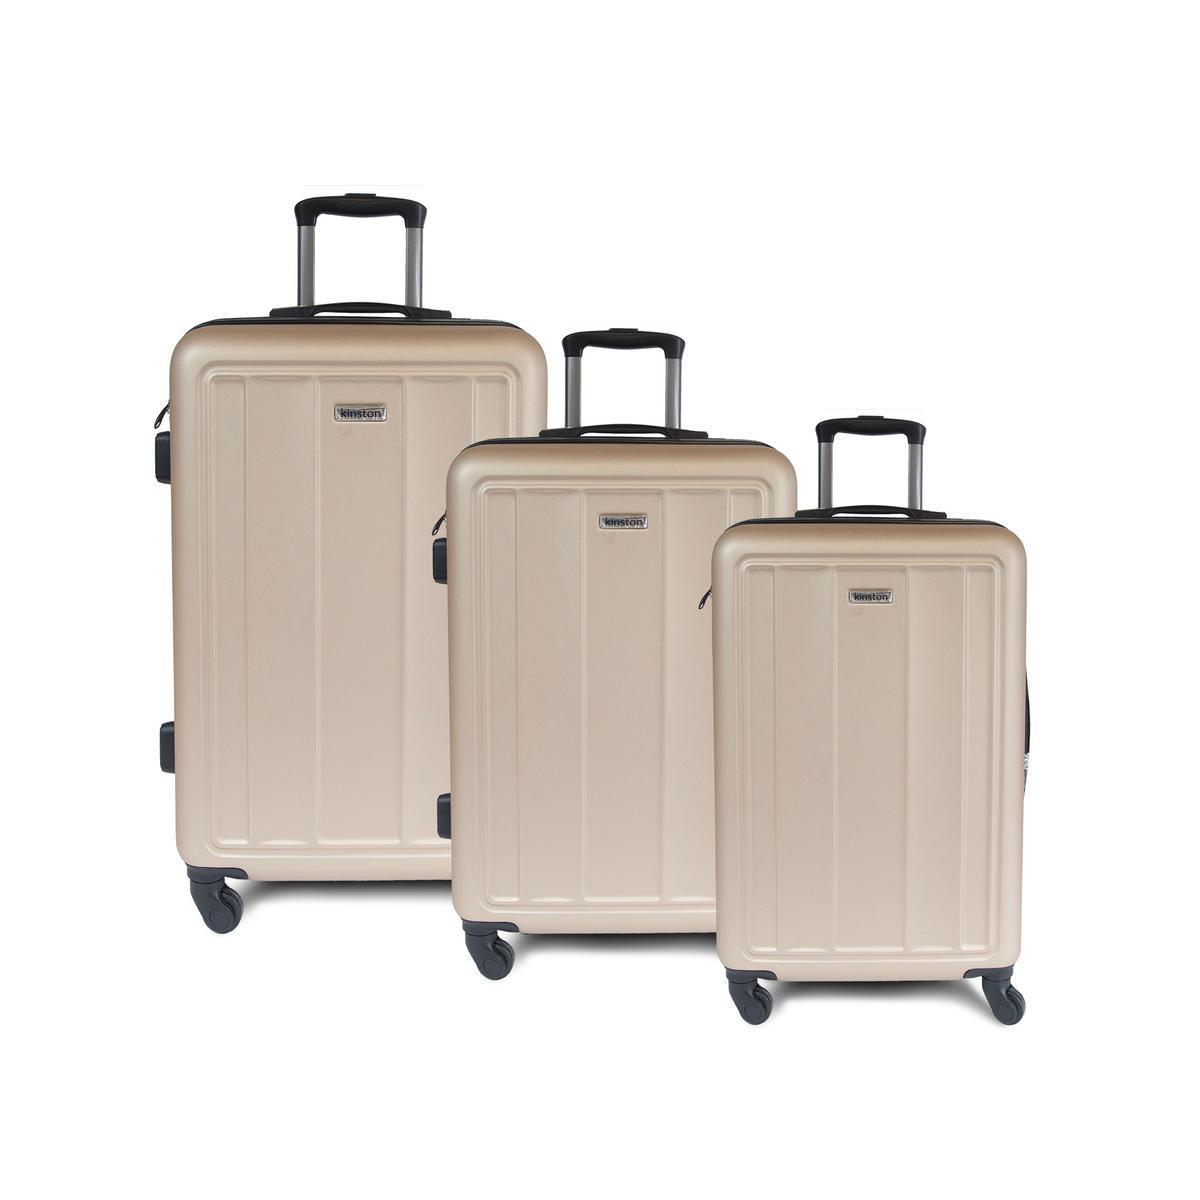 3 valises à roulettes - KINSTON